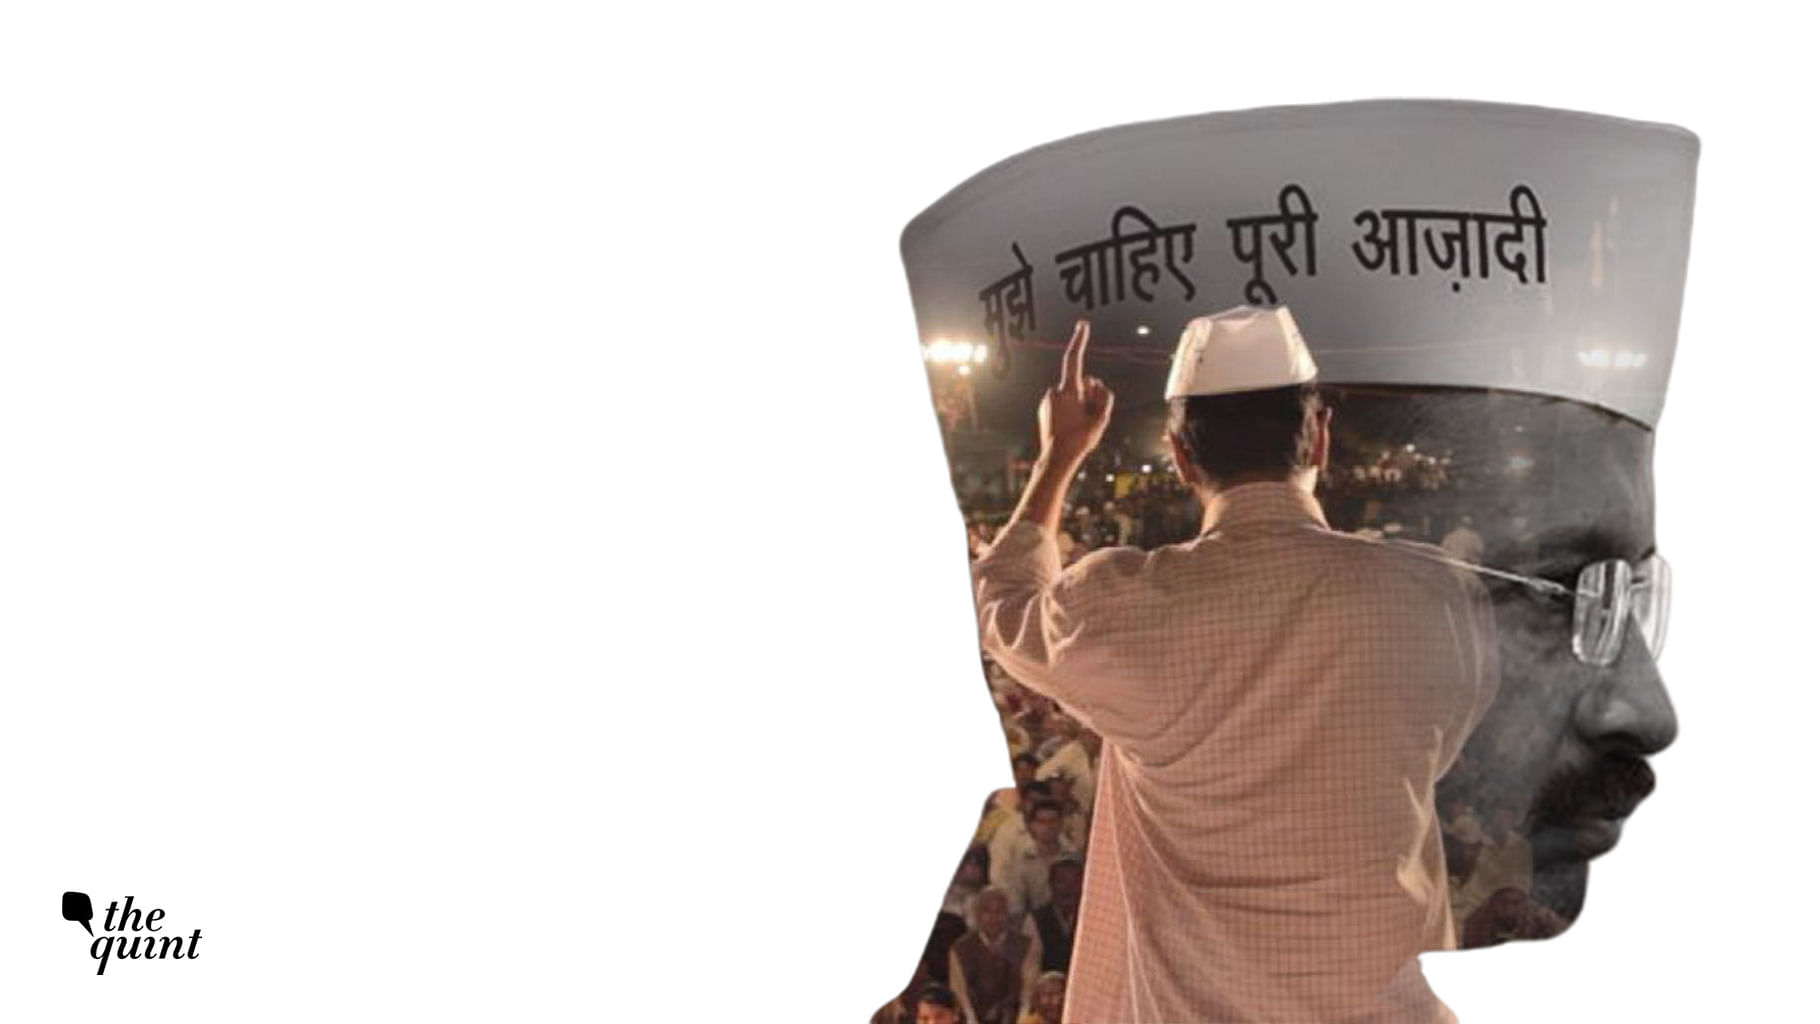 Arvind Kejriwal: The Aam Aadmi Chief Minister